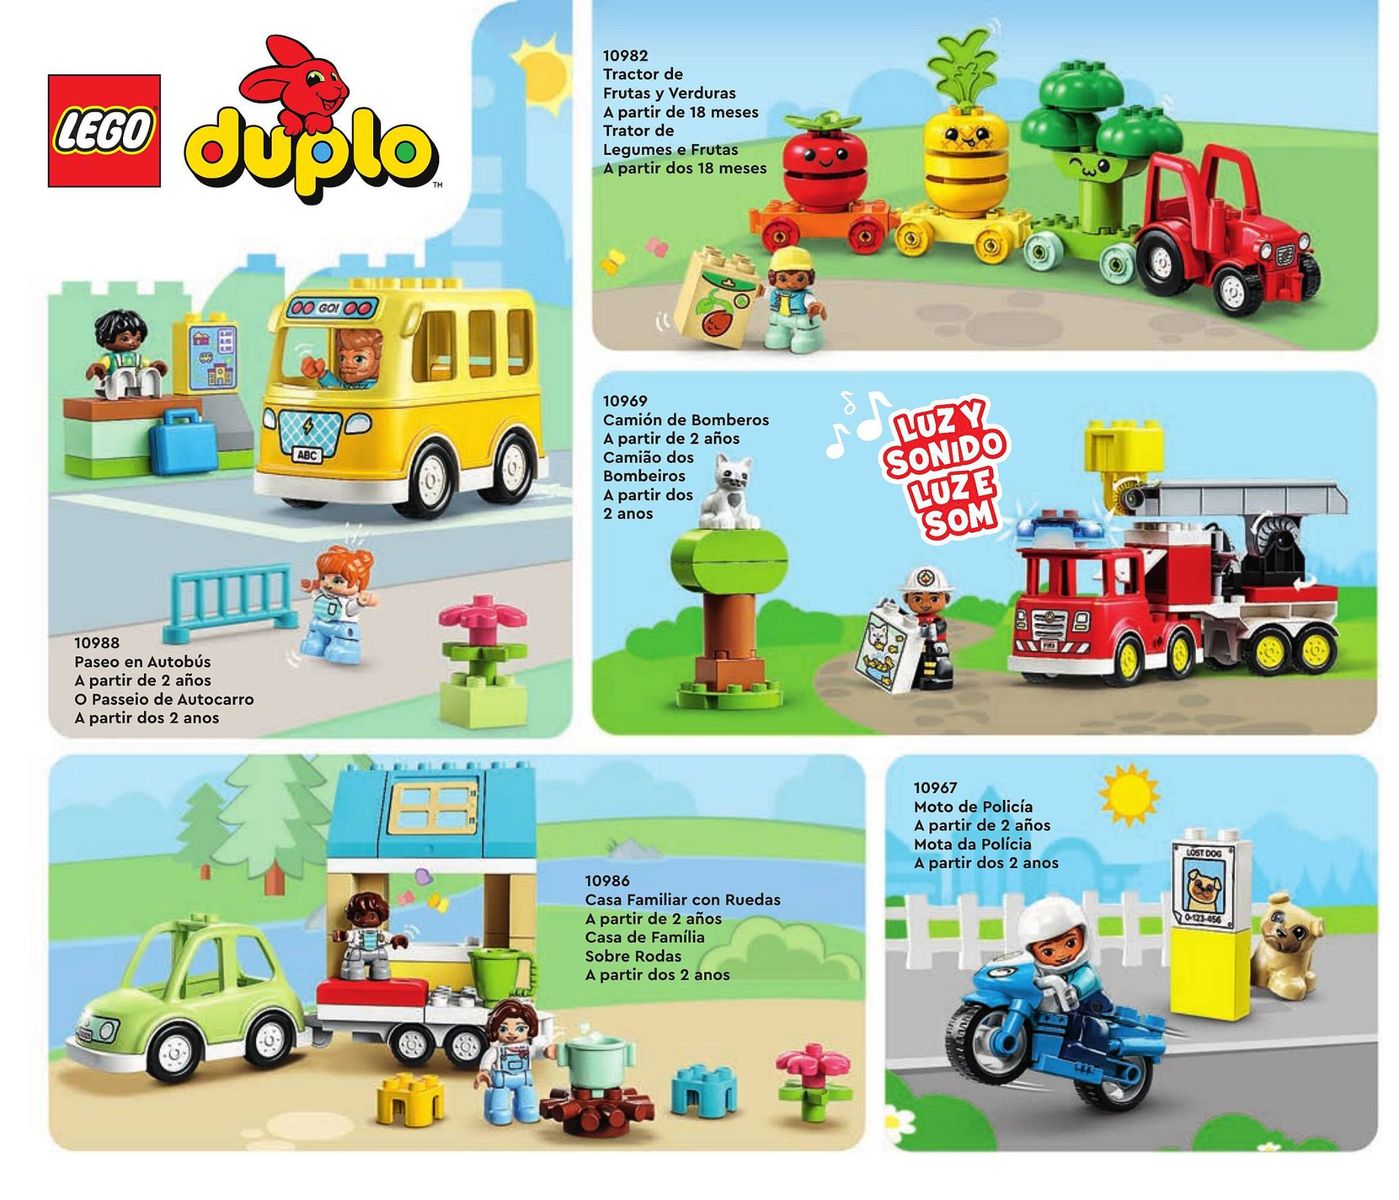 Brinquedos em promoção: Trator de 3 eixos e Camião dos Bombeiros